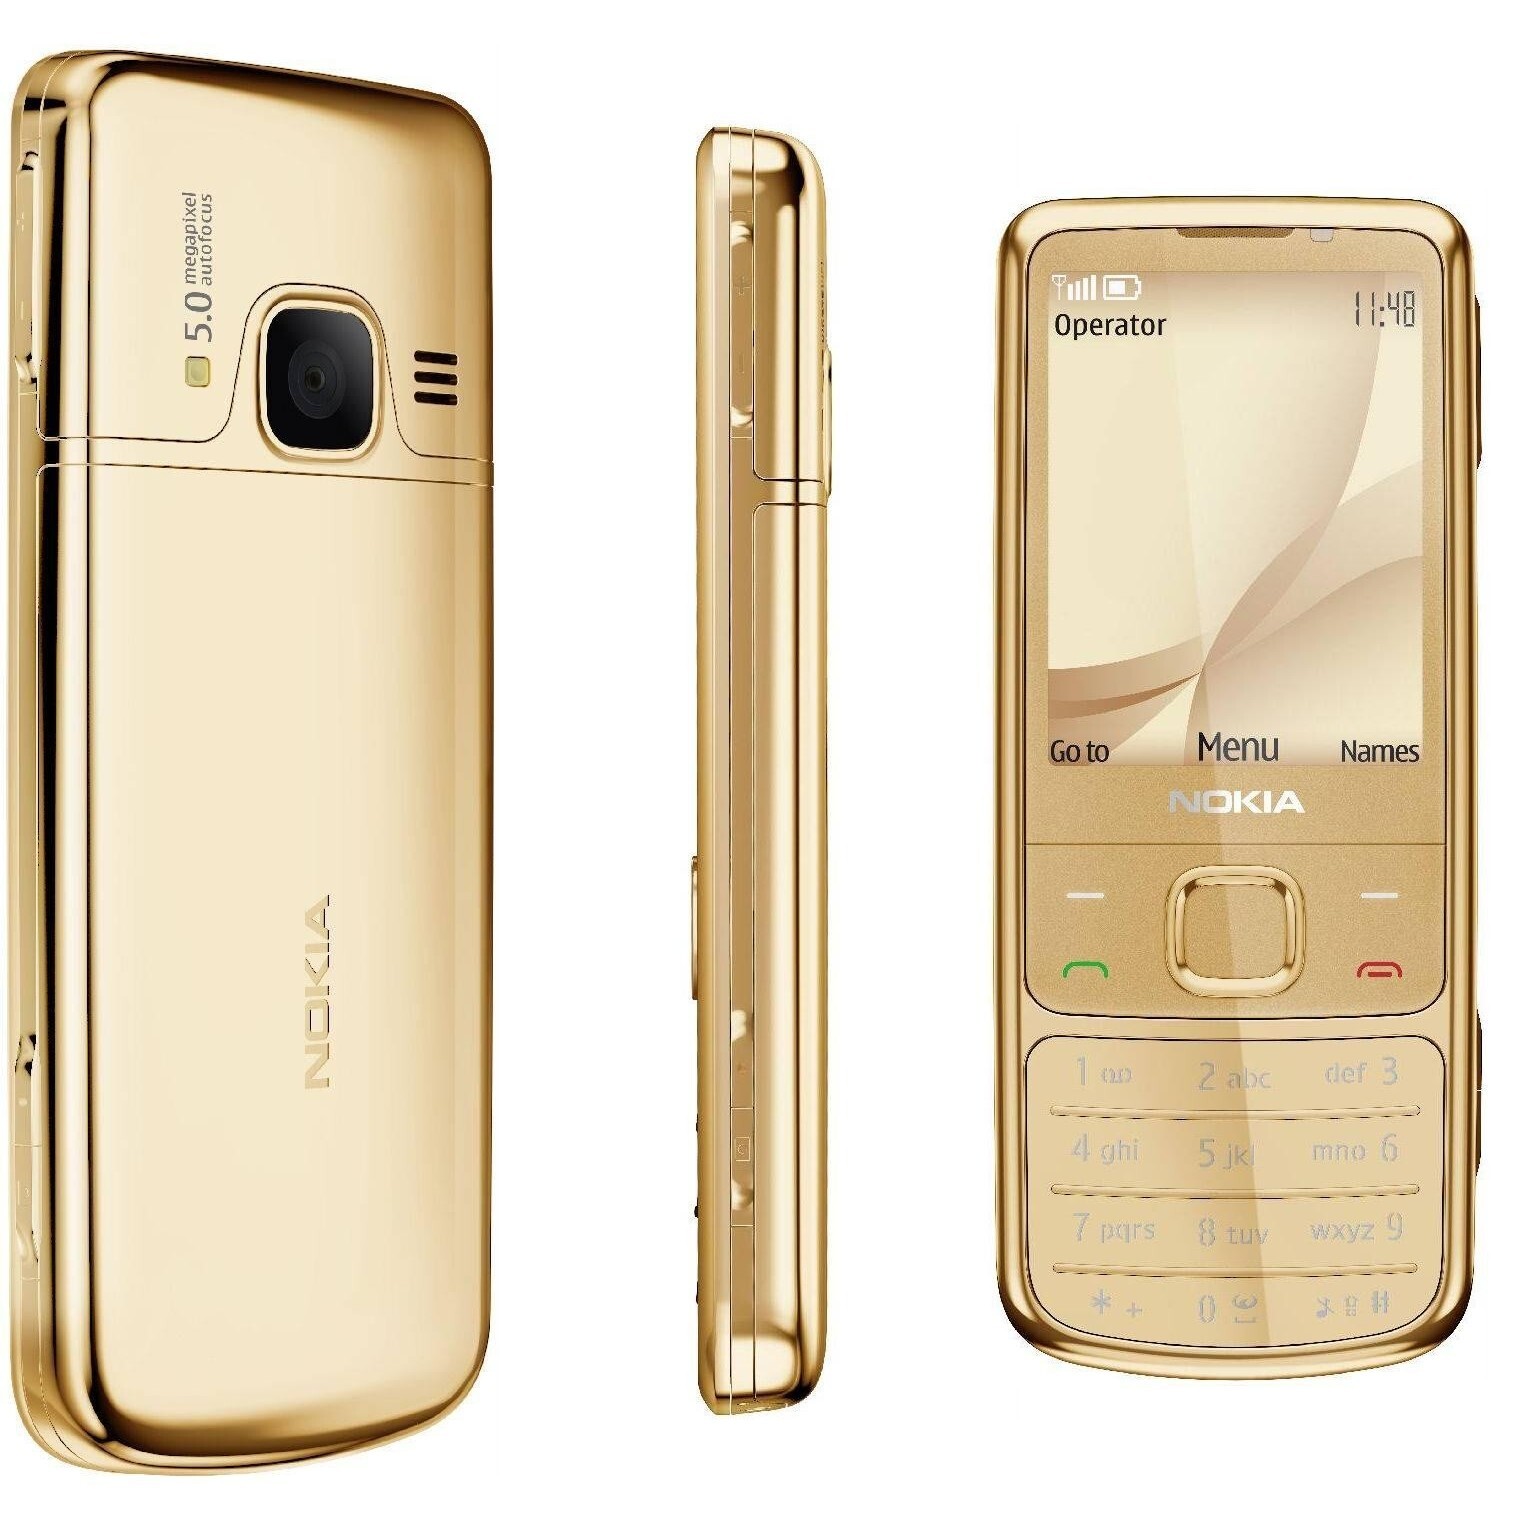 Купить телефон нокиа в спб. Nokia 6700 Classic Gold. Nokia 6700 Classic Gold Edition. Nokia 6700 Gold. Нокиа 6700 золотой.